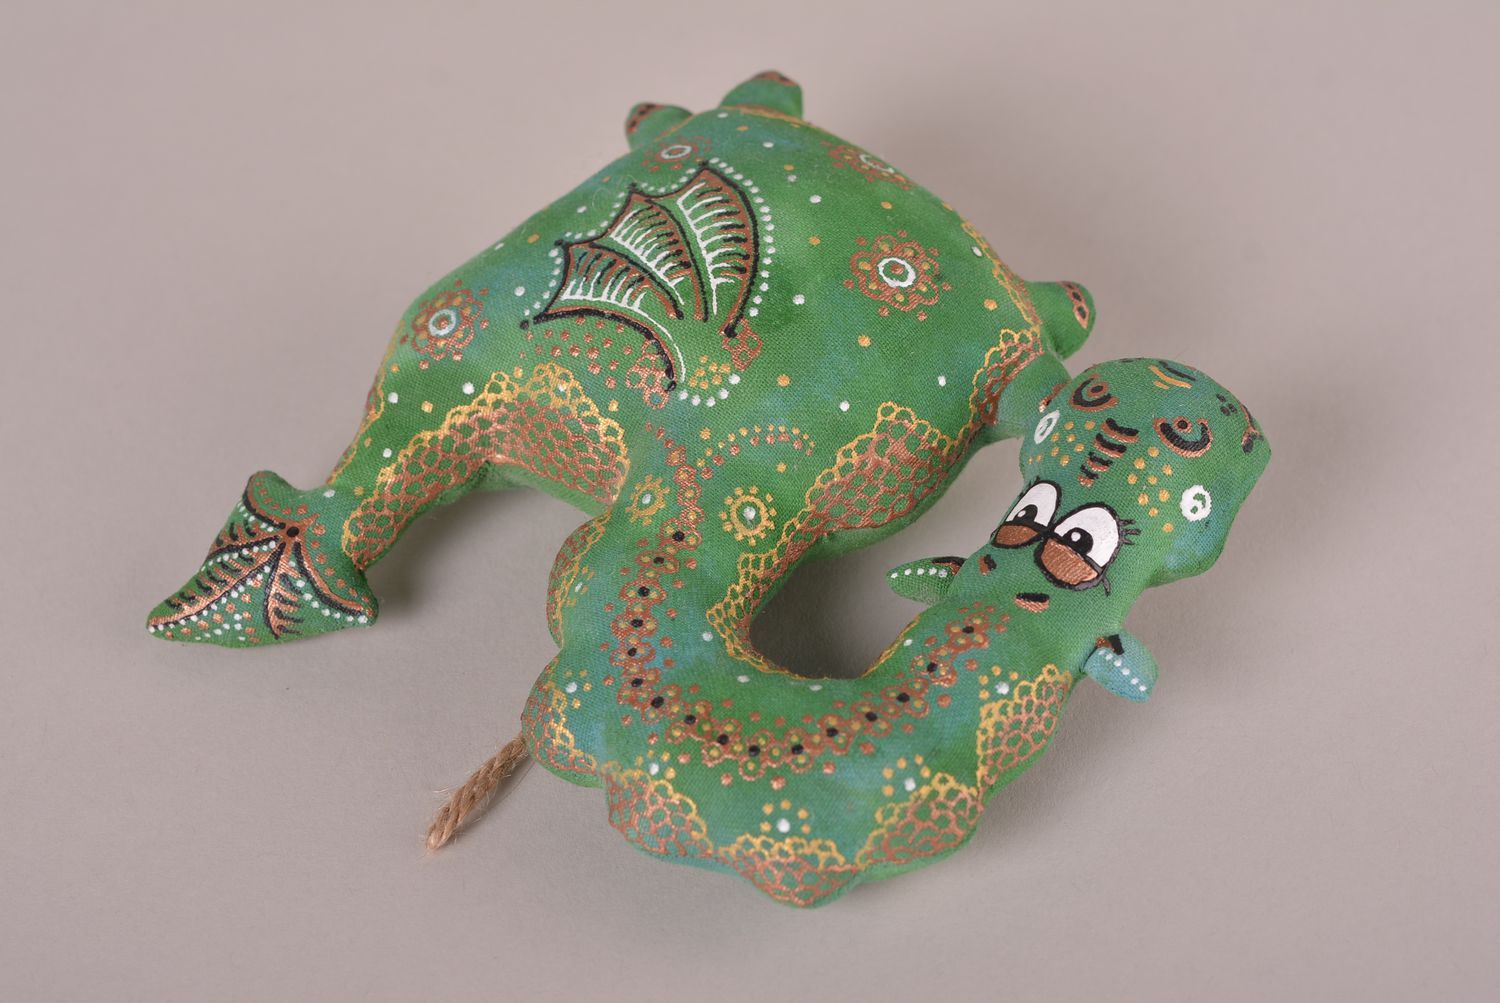 Handmade Stoff Tier ausgefallenes Spielzeug Geschenk Idee Drache zum Aufhängen foto 3